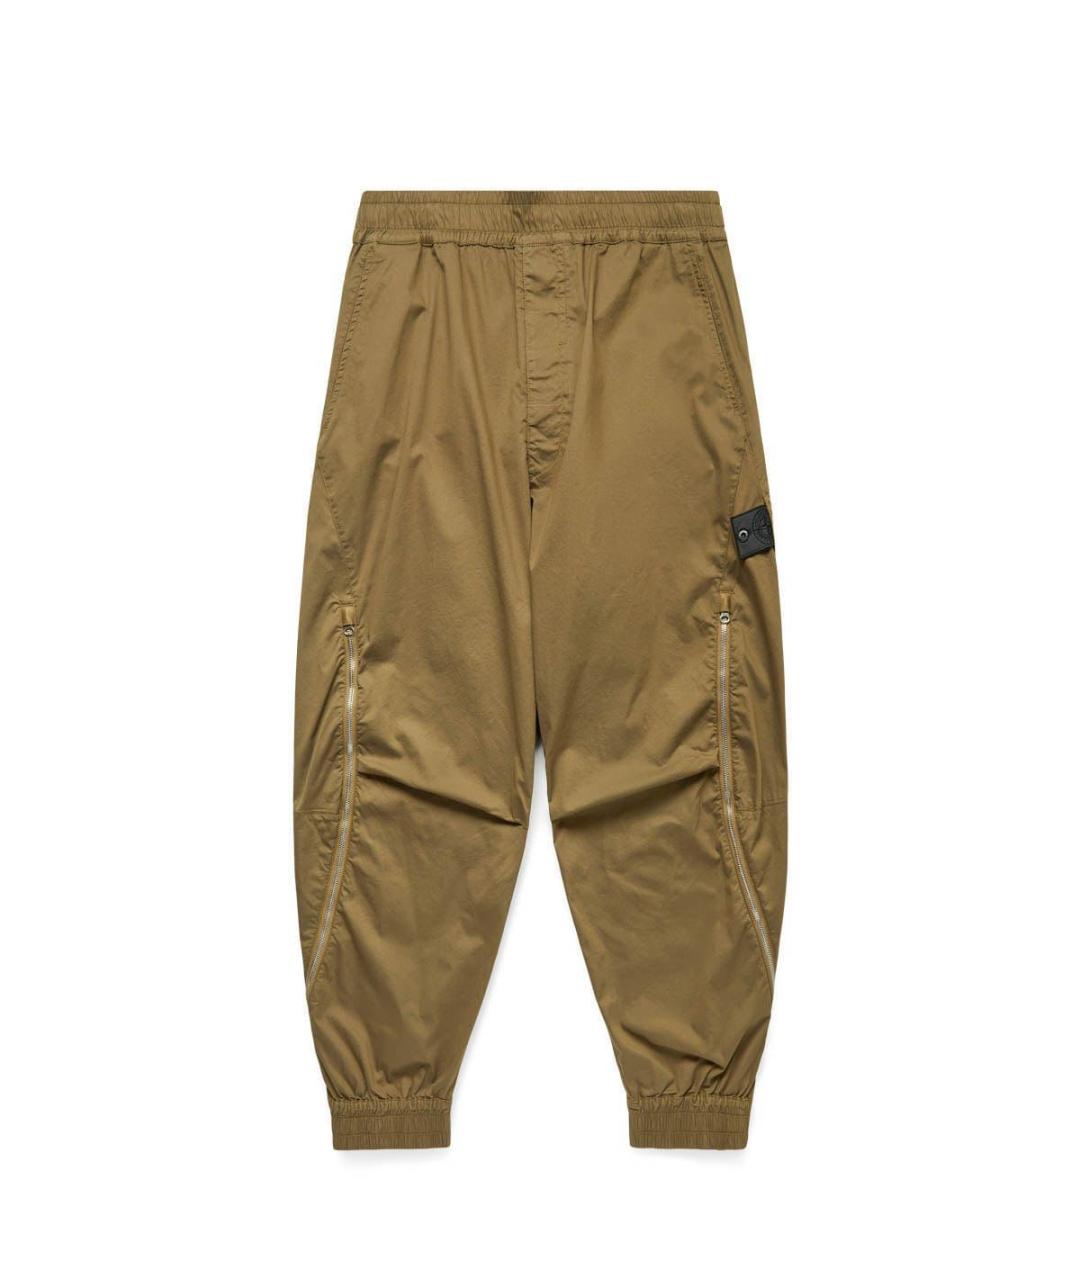 STONE ISLAND SHADOW PROJECT Хаки синтетические повседневные брюки, фото 1